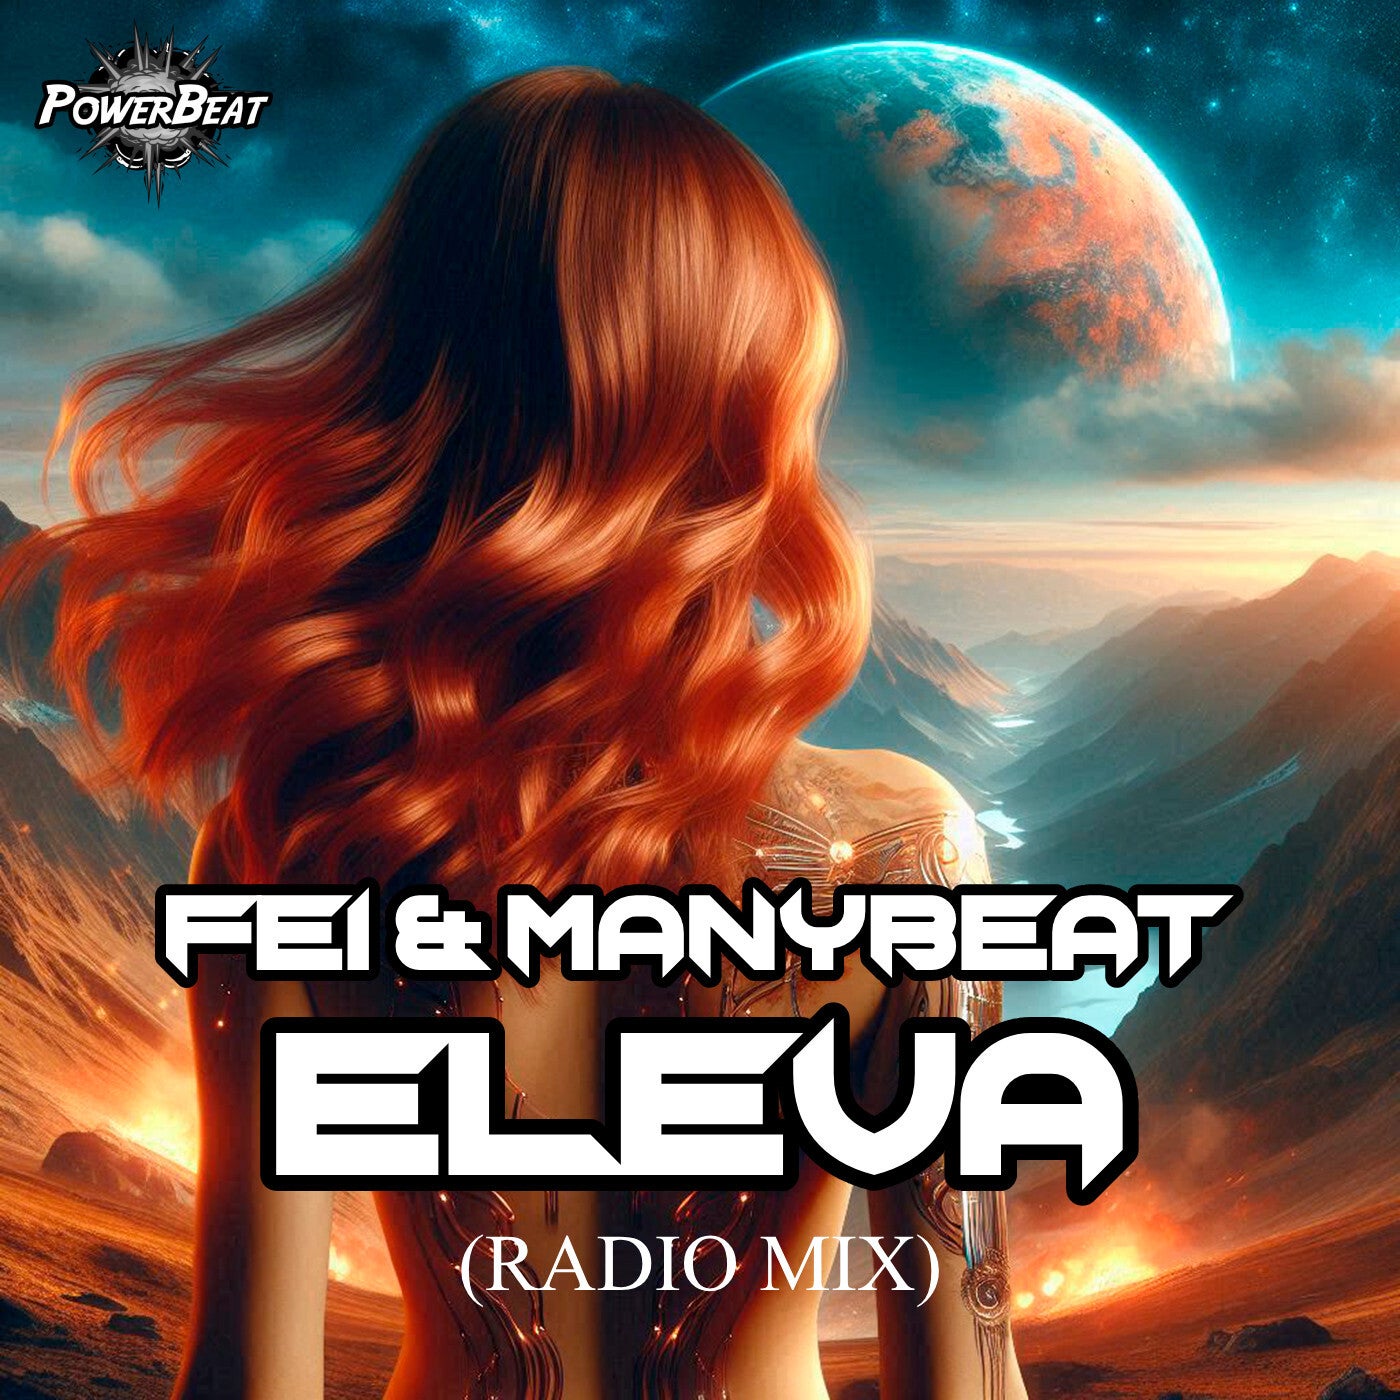 Eleva (Radio Mix)